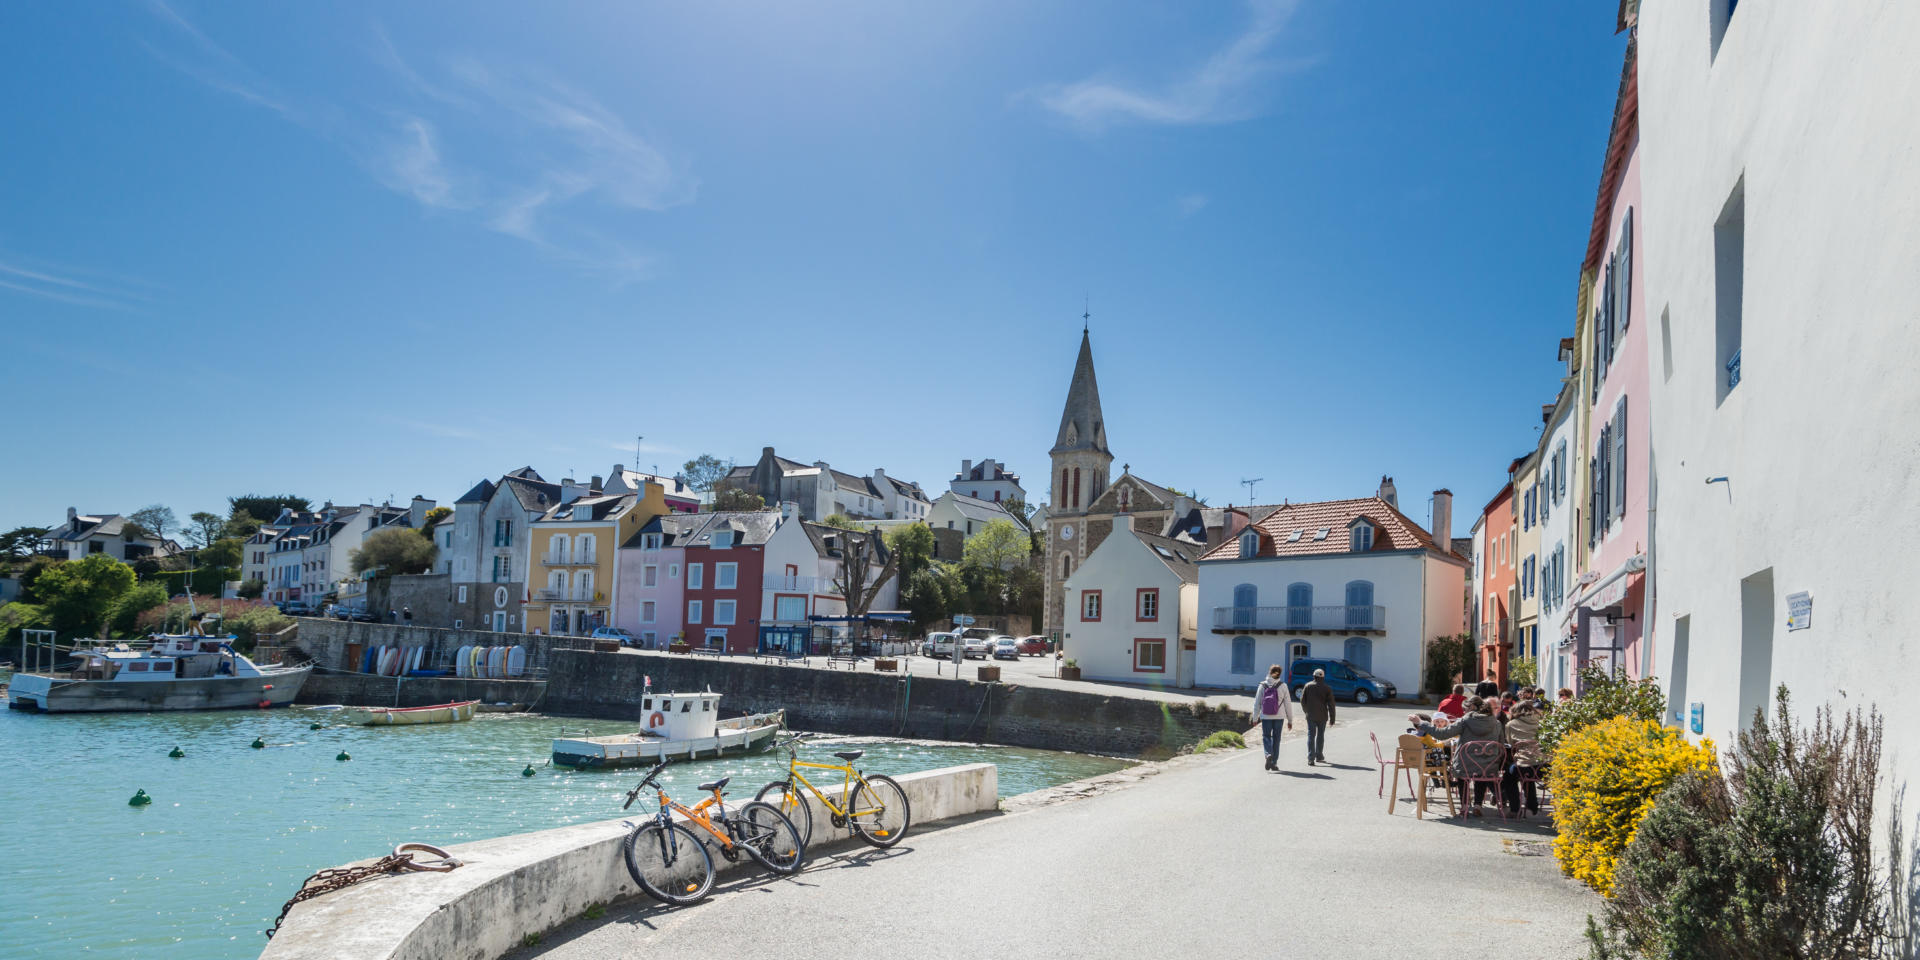 Doëlan, le pittoresque petit port du sud de la Bretagne